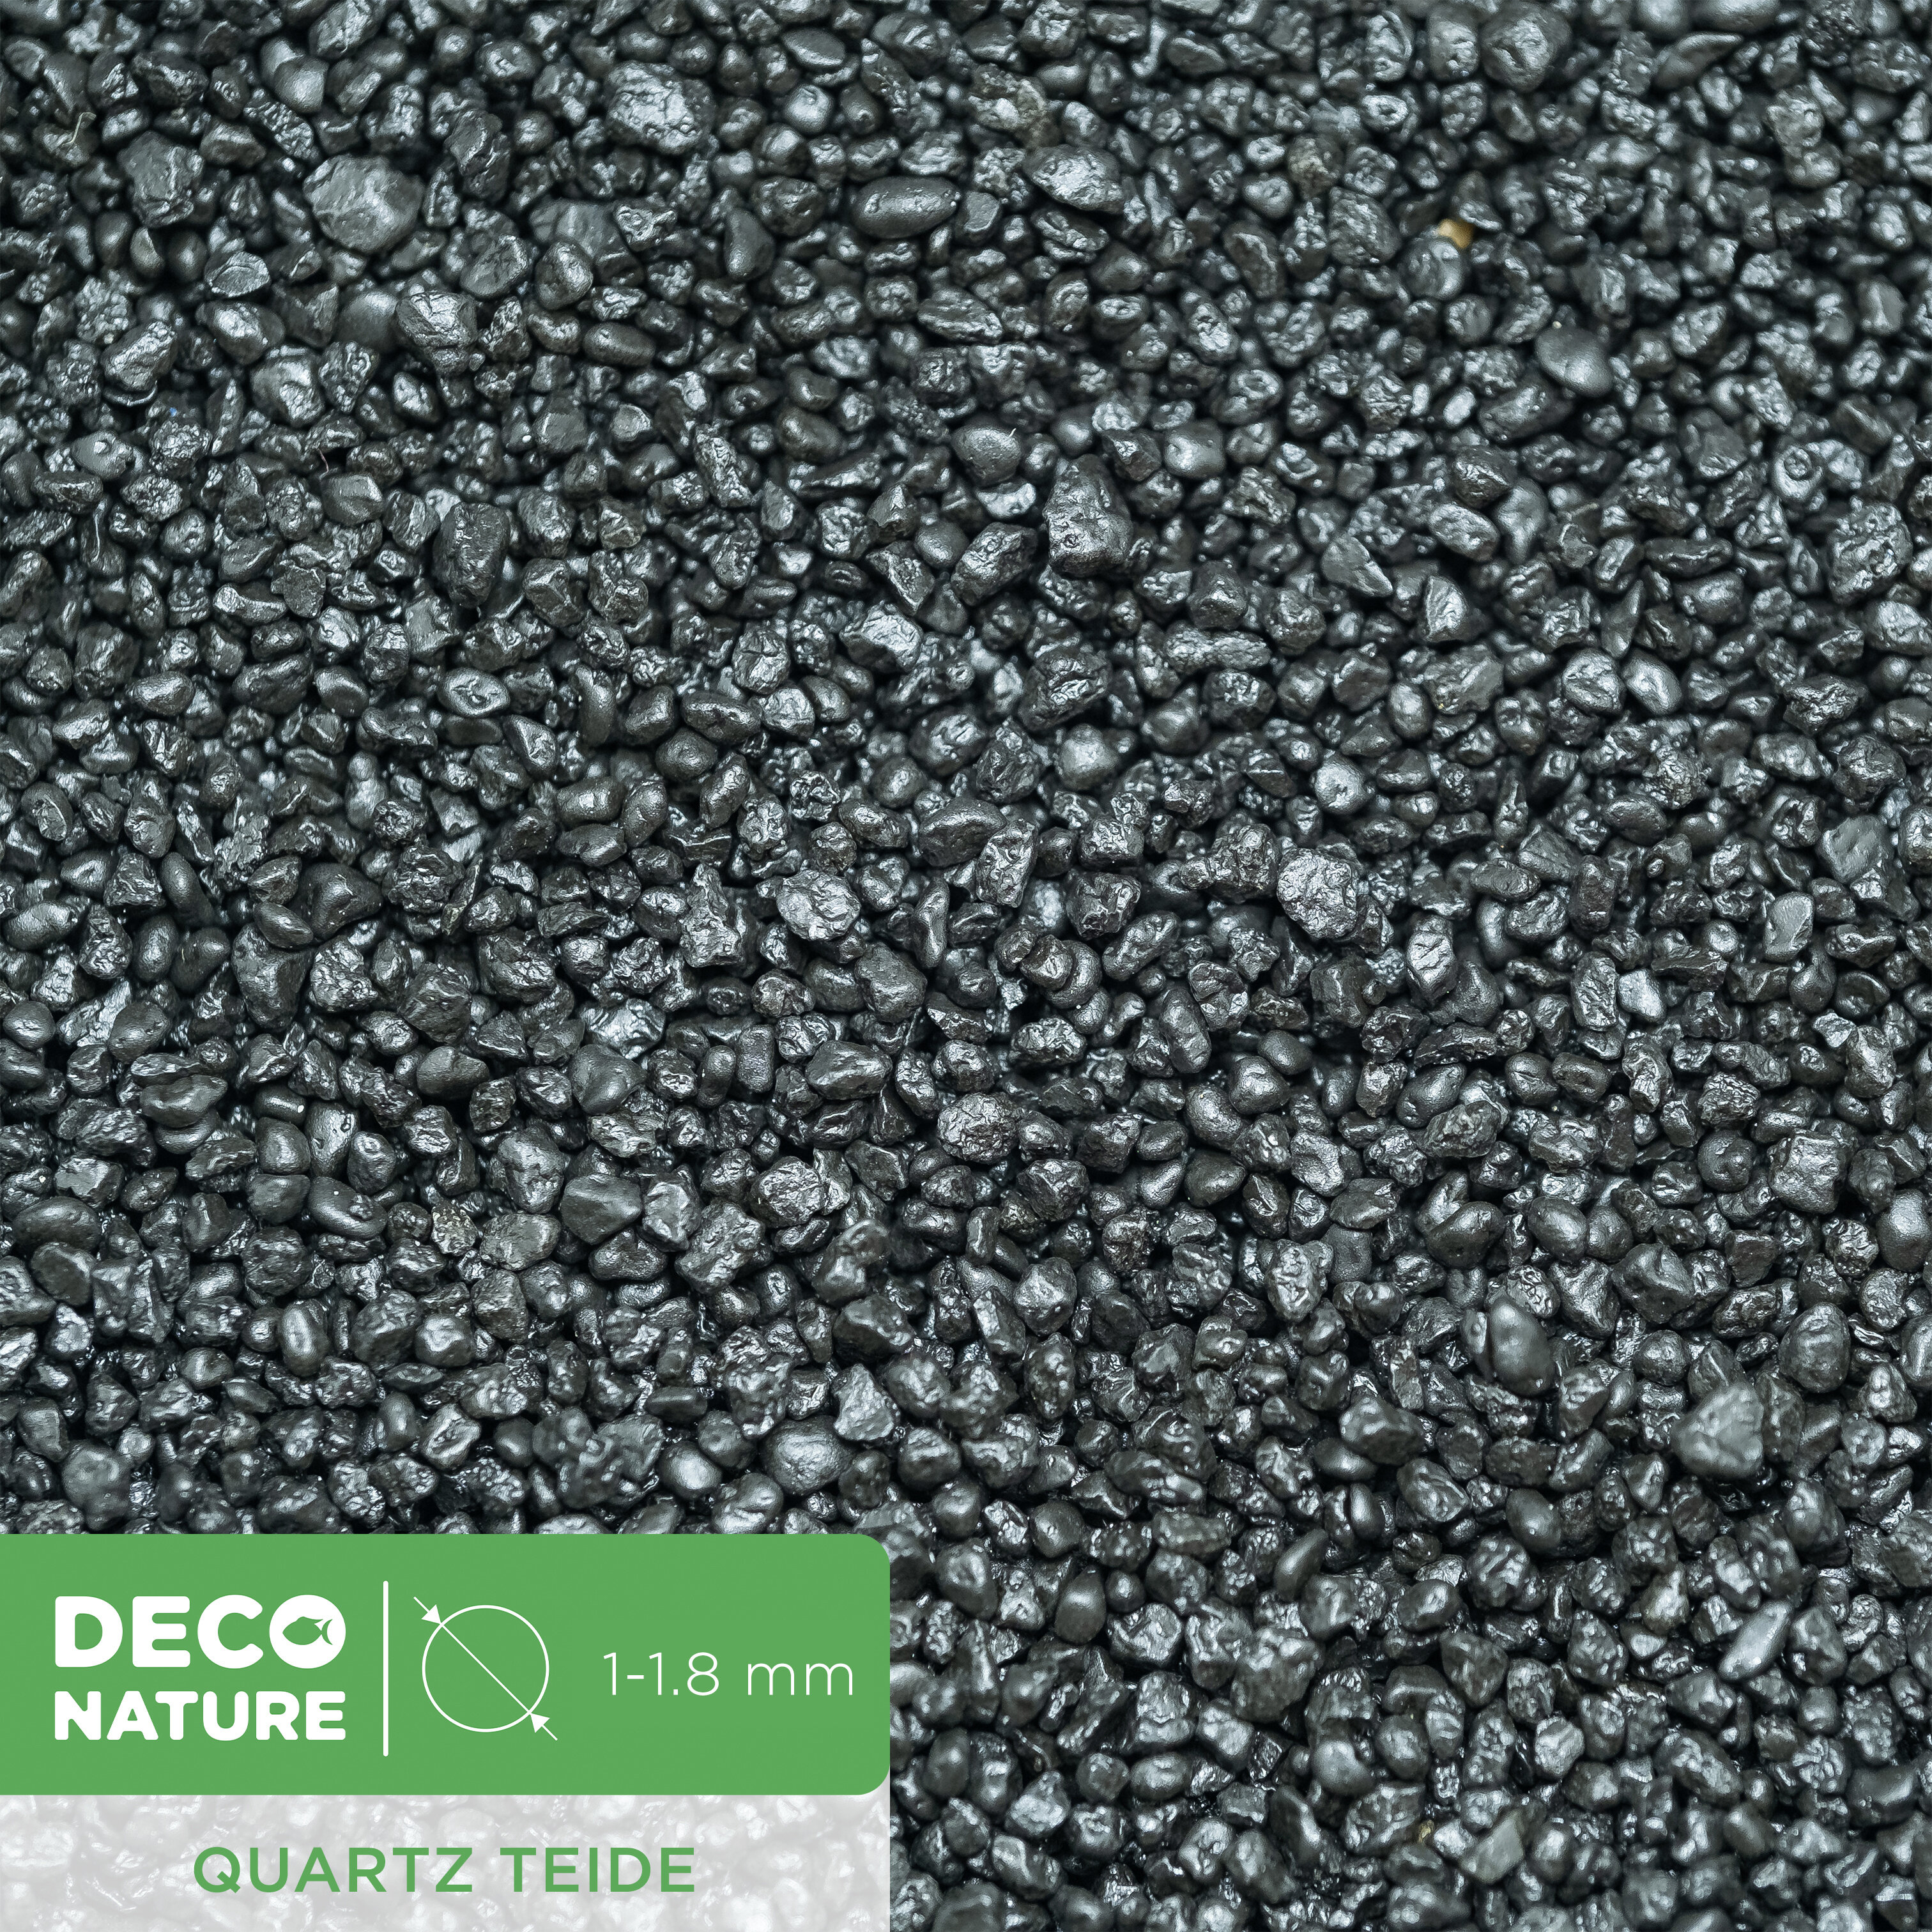 DECO NATURE TEIDE - Черный кварцевый песок для аквариума фракции 1-1,8 мм, 0,6л/1кг